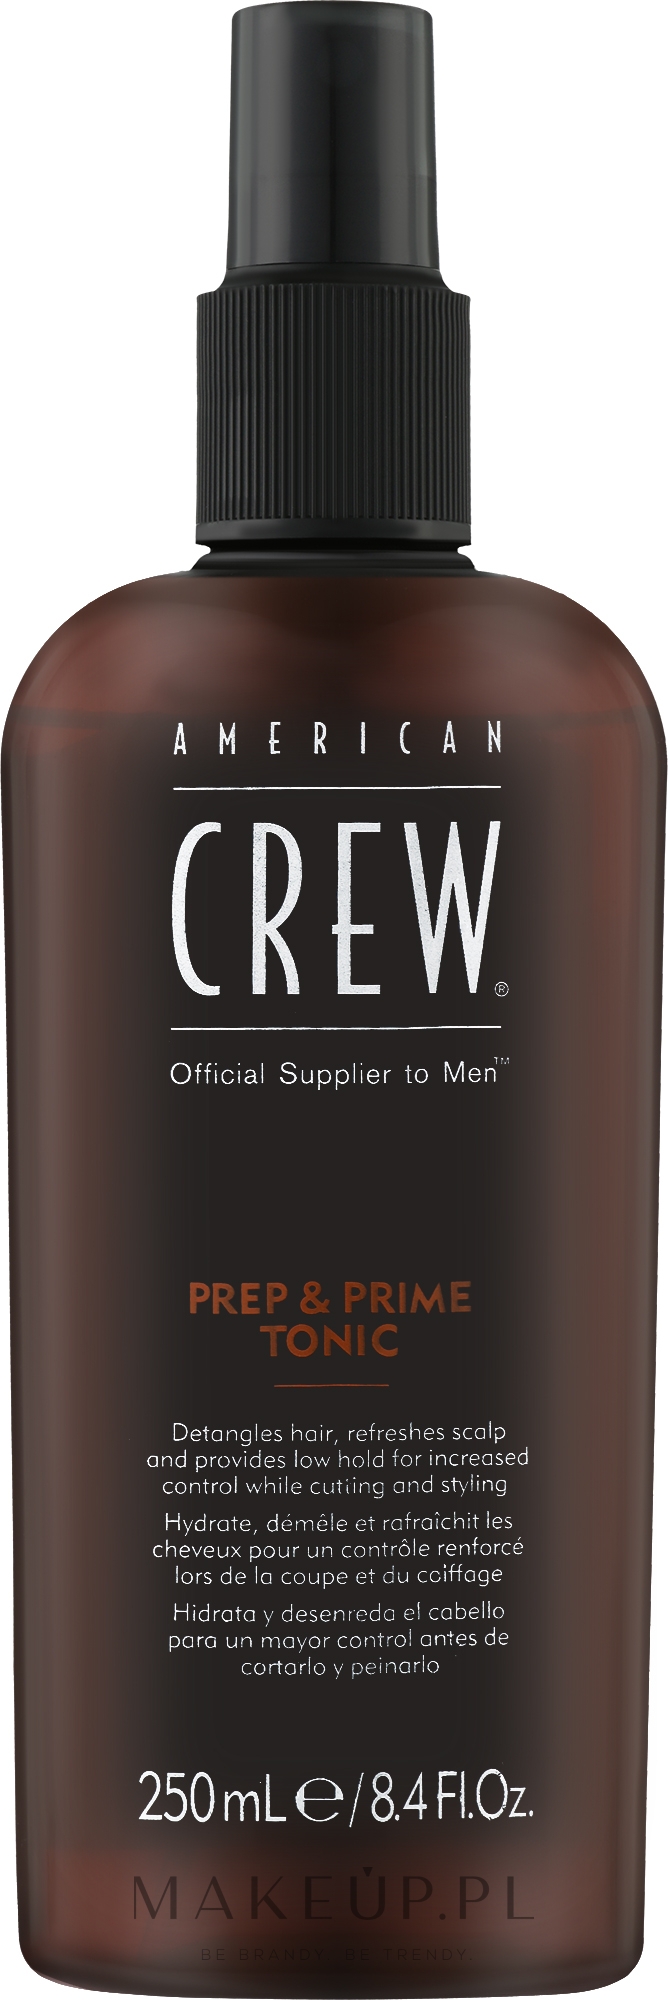 Nawilżająco-odświeżający tonik do włosów - American Crew Official Supplier to Men Prep & Prime Tonic — Zdjęcie 250 ml